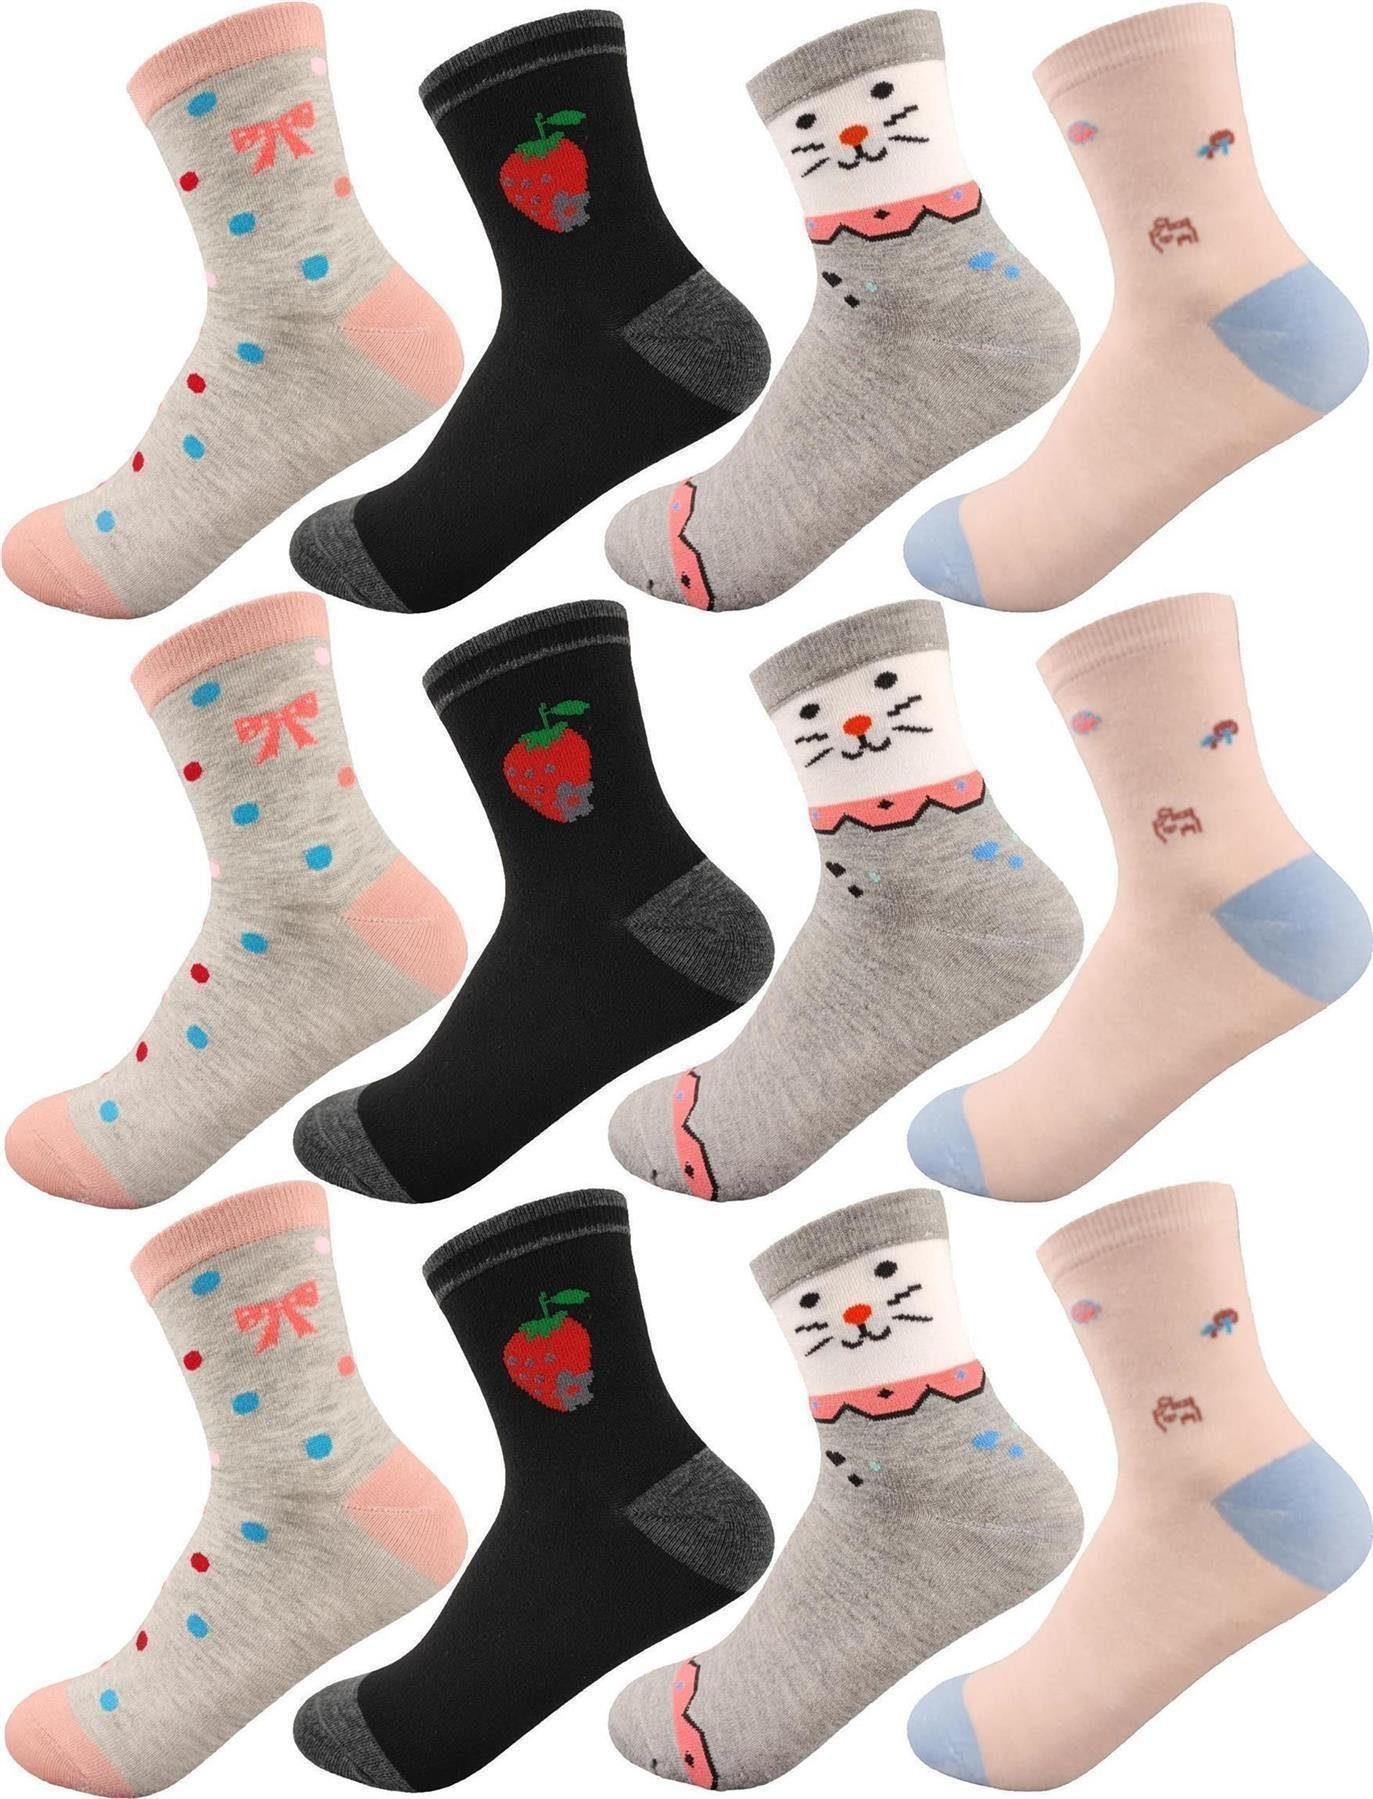 EloModa Freizeitsocken 12 Paar Kinder Socken Jungen & Mädchen mit Muster Baumwolle, 23-26 (12-Paar) 12 Paar, Mix11